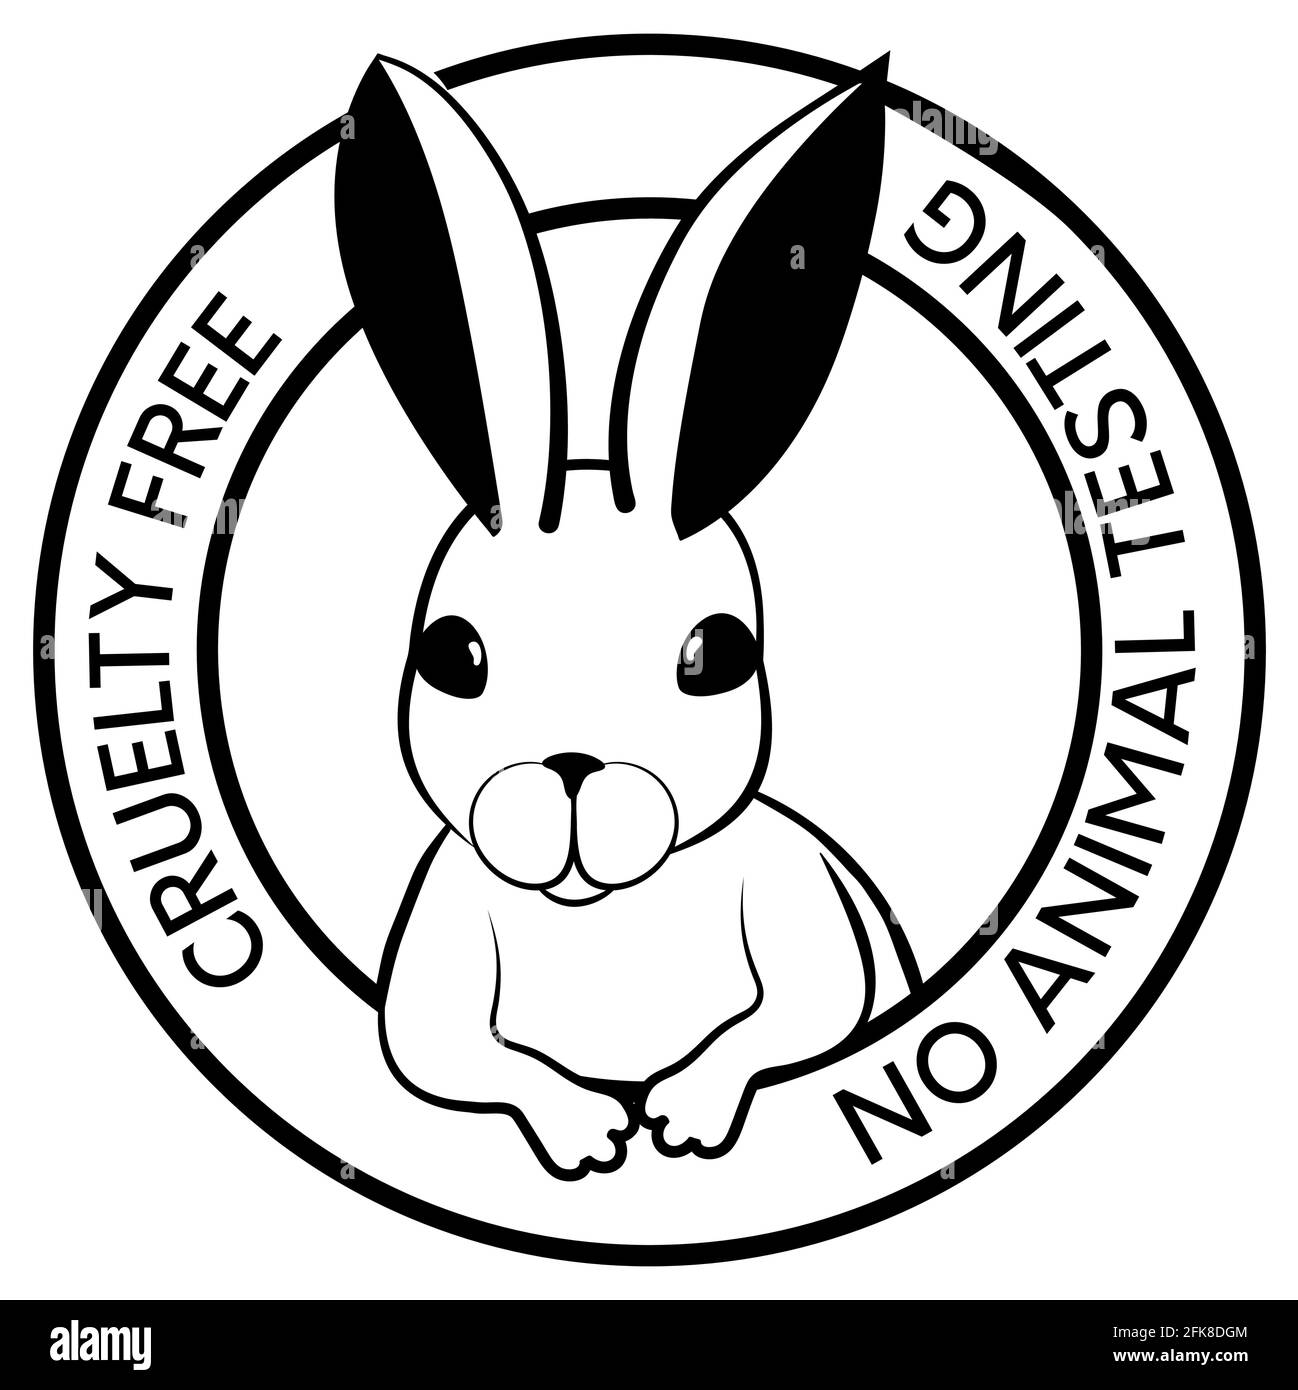 Design nero monocromatico senza crudeltà con simbolo di coniglio. Icona non testato su animali. Illustrazione vettoriale Illustrazione Vettoriale